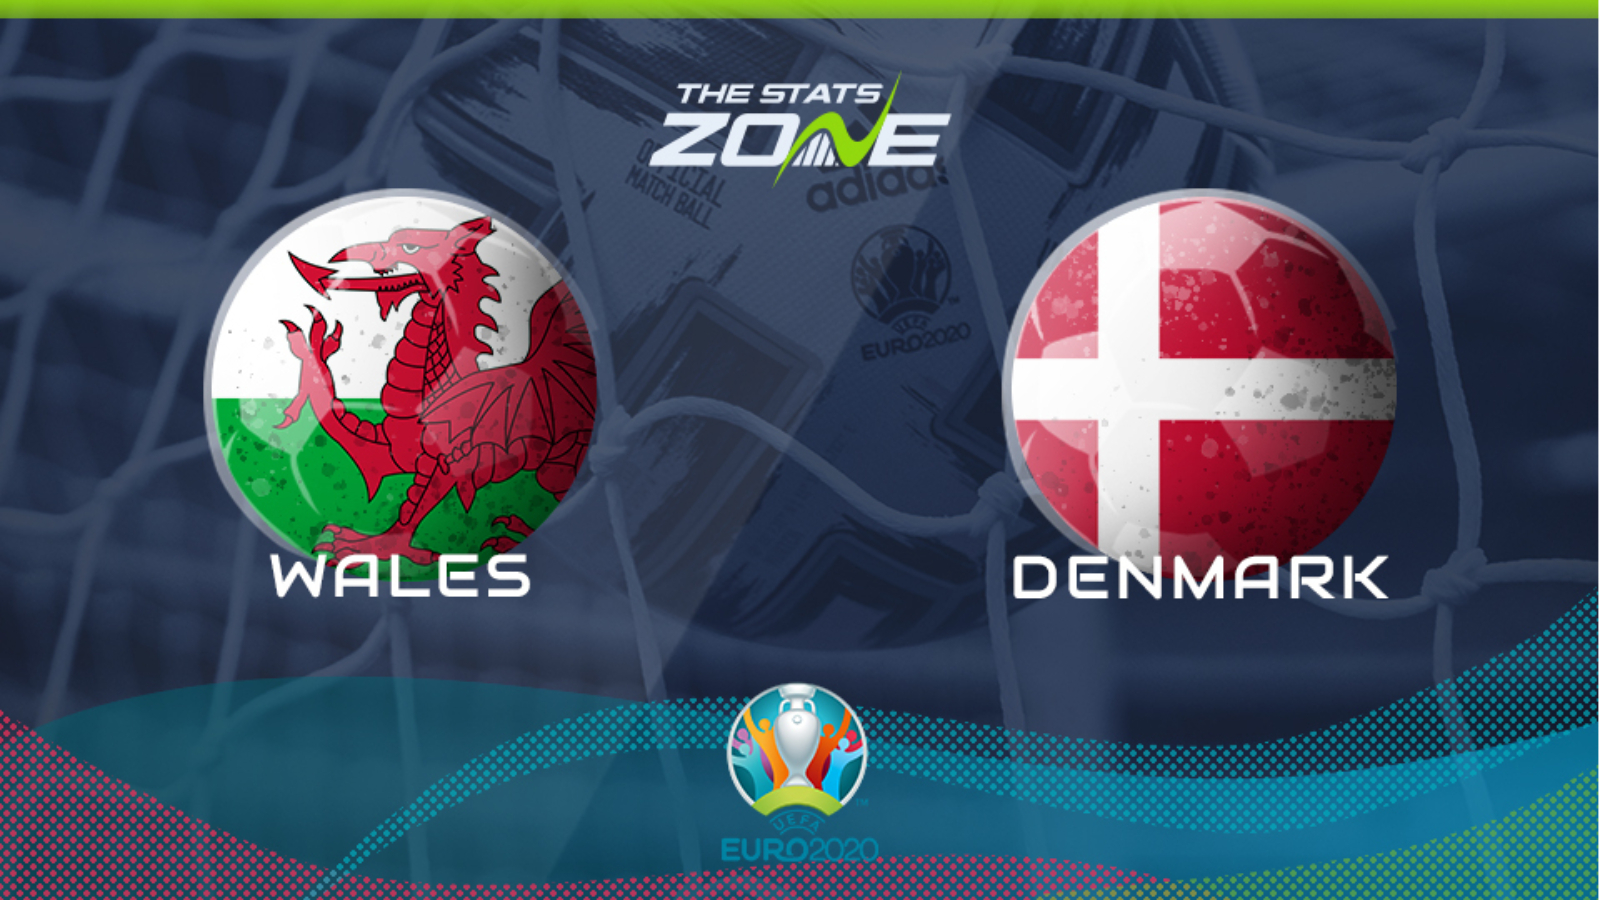 Wales vs denmark prediction